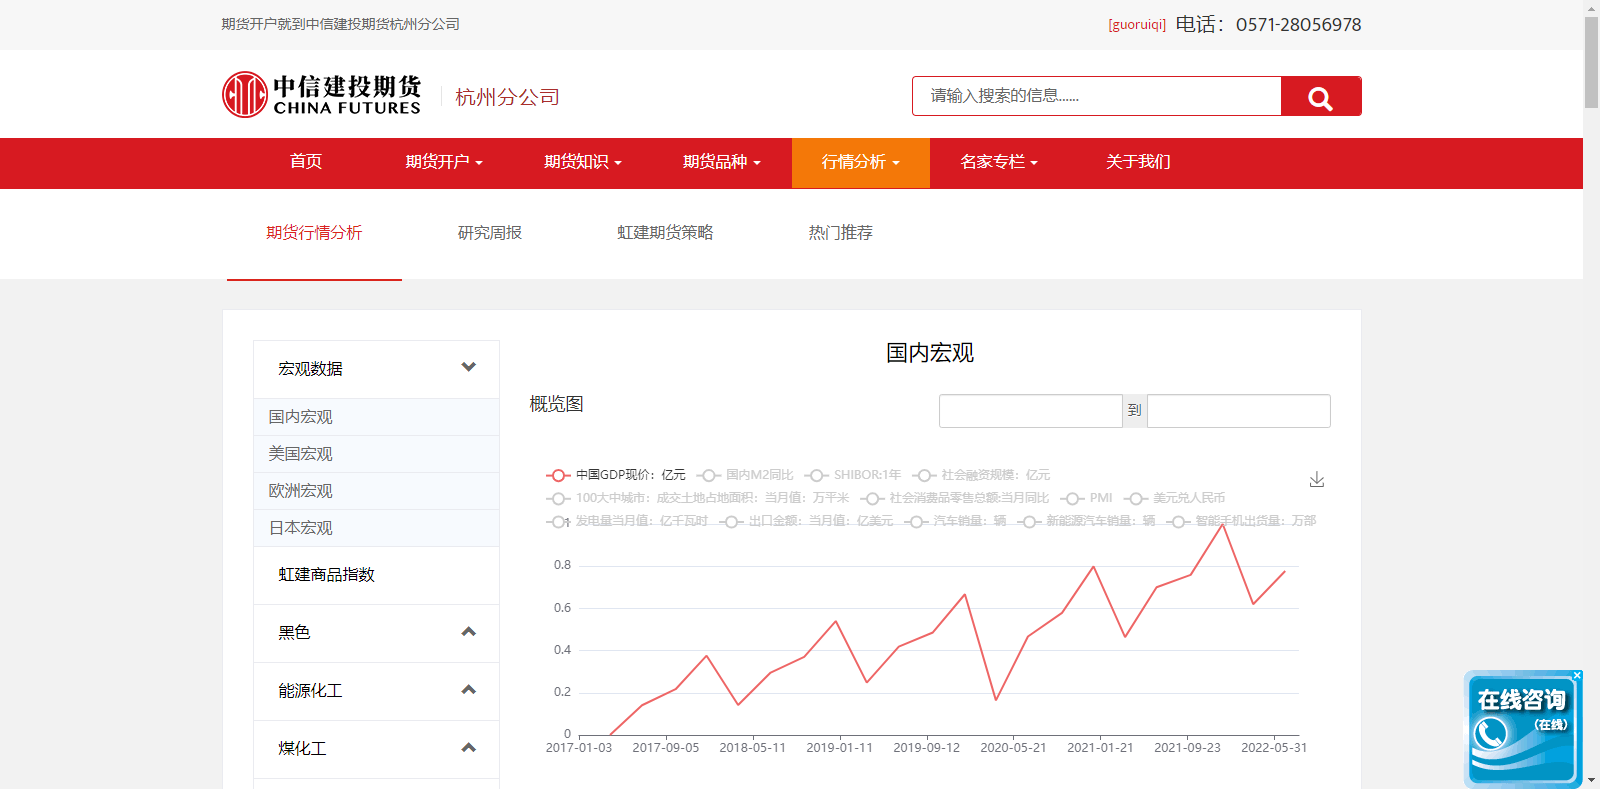 中信建投期货杭州分公司数据库系统